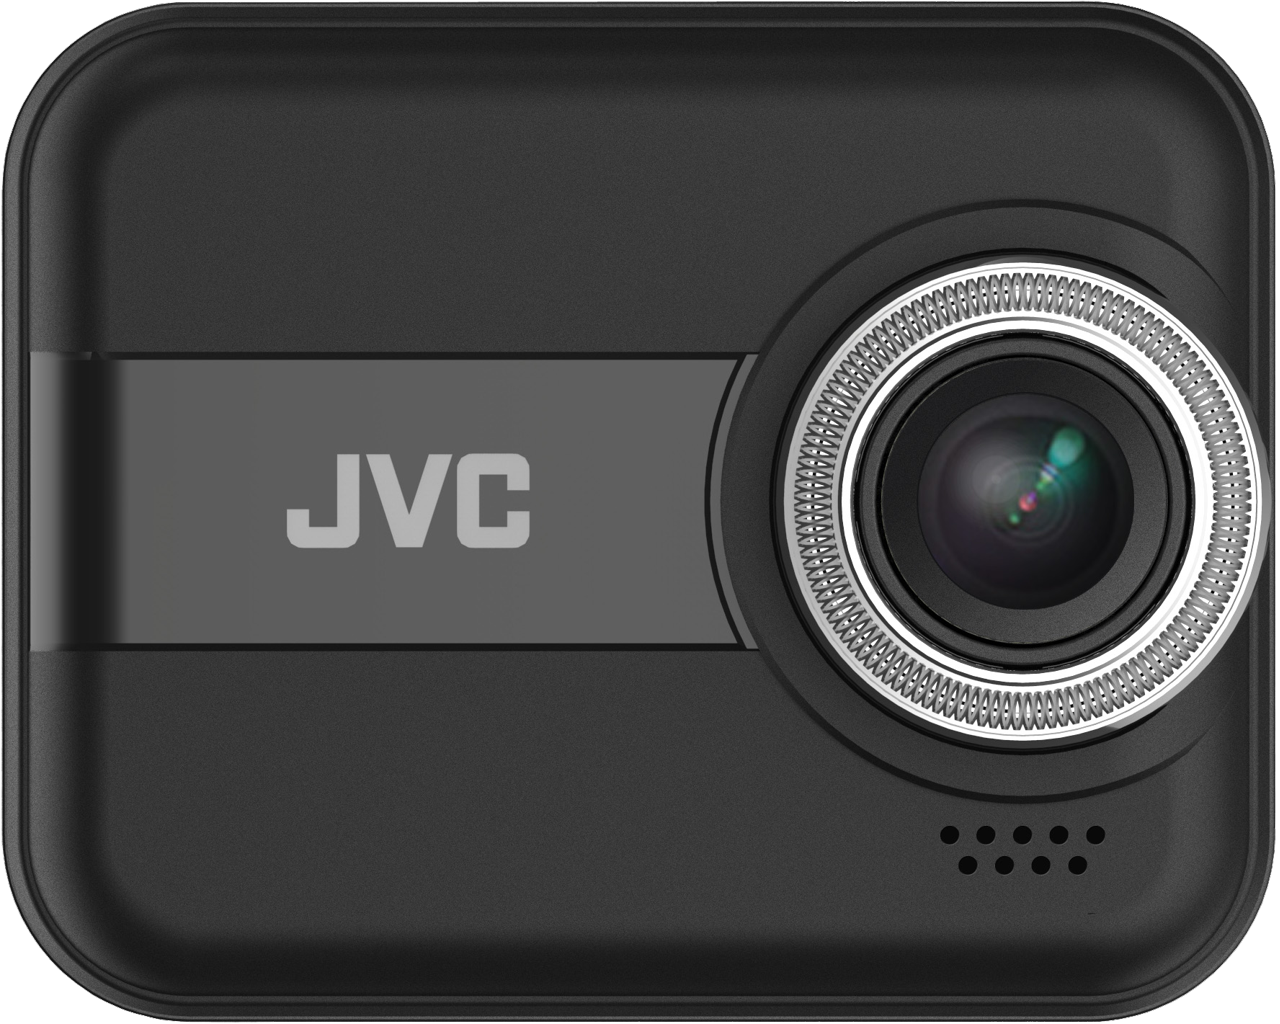 JVC GC-DRE10-E Full-HD Dashcam mit WiFi, App-Steuerung, 4 GB Micro-SD Karte